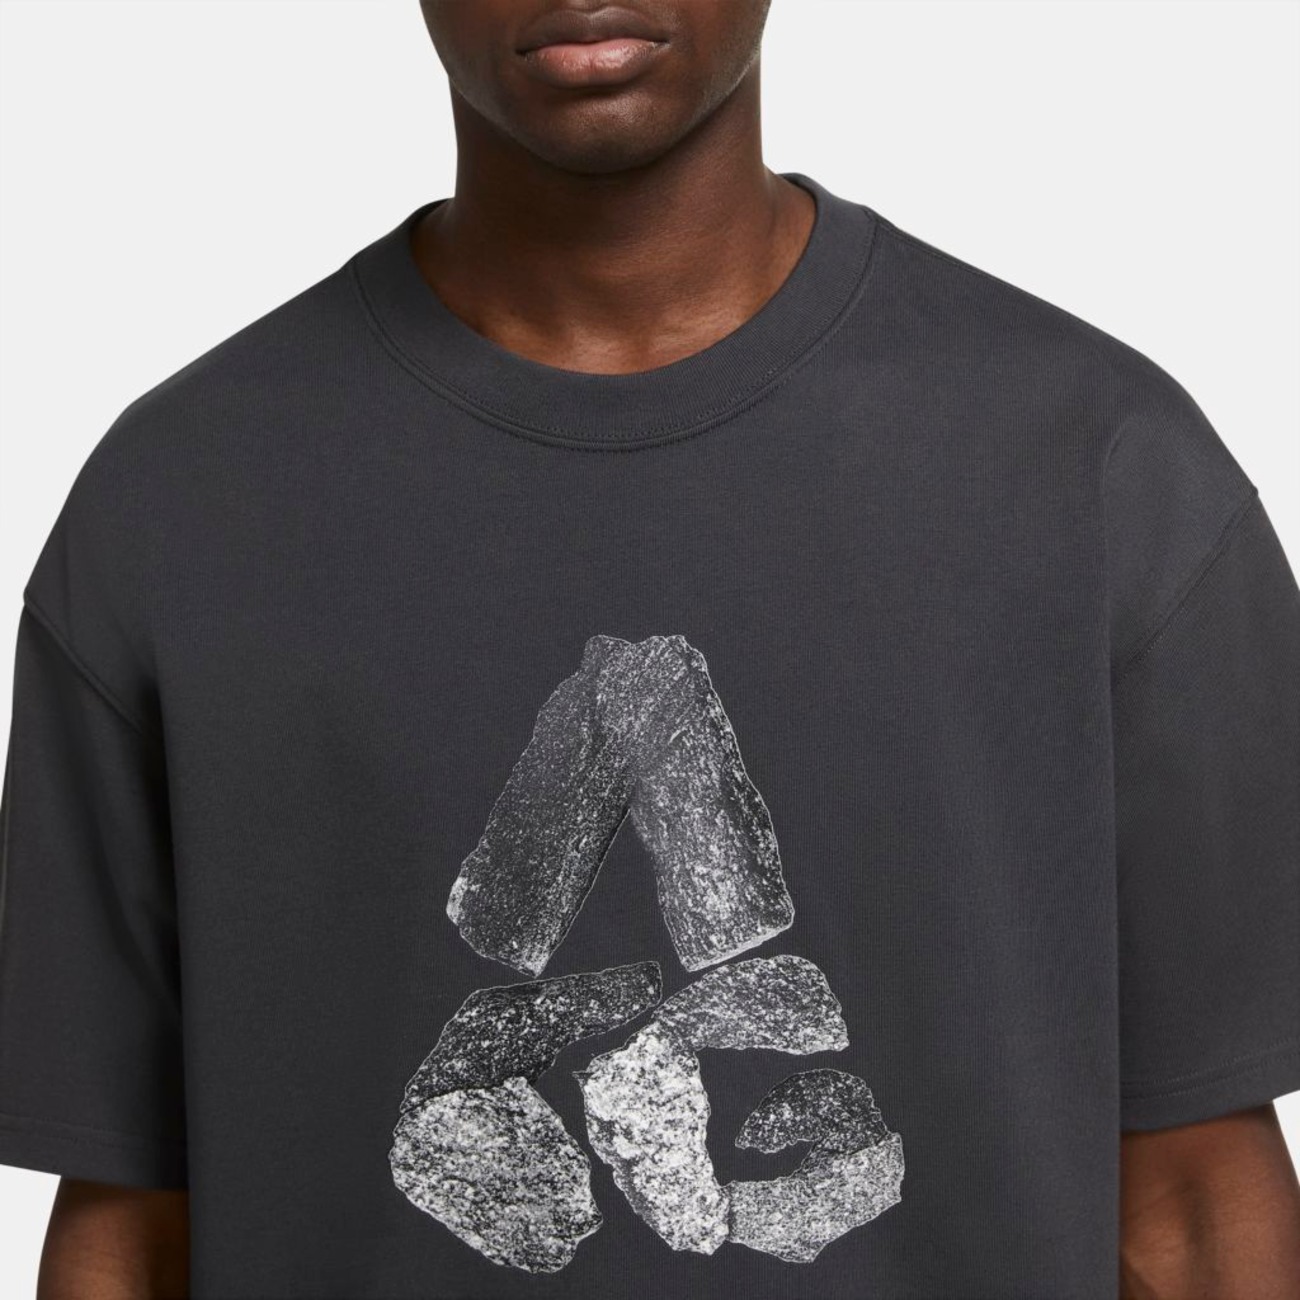 Camiseta NikeLab ACG "Monolithic" Masculina - Foto 3